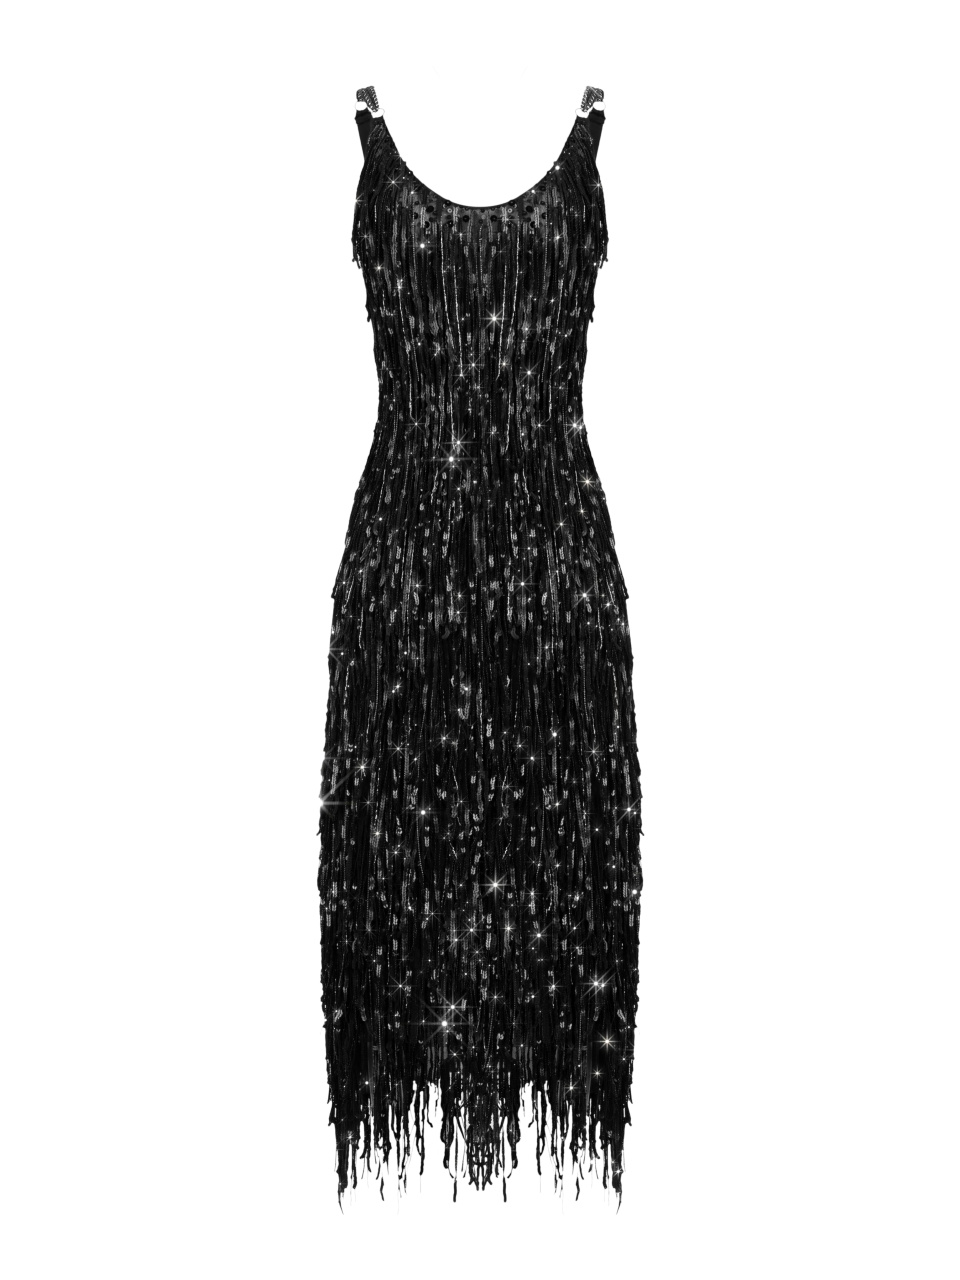 Черное платье-миди с бахромой из бисера и пайеток, 1